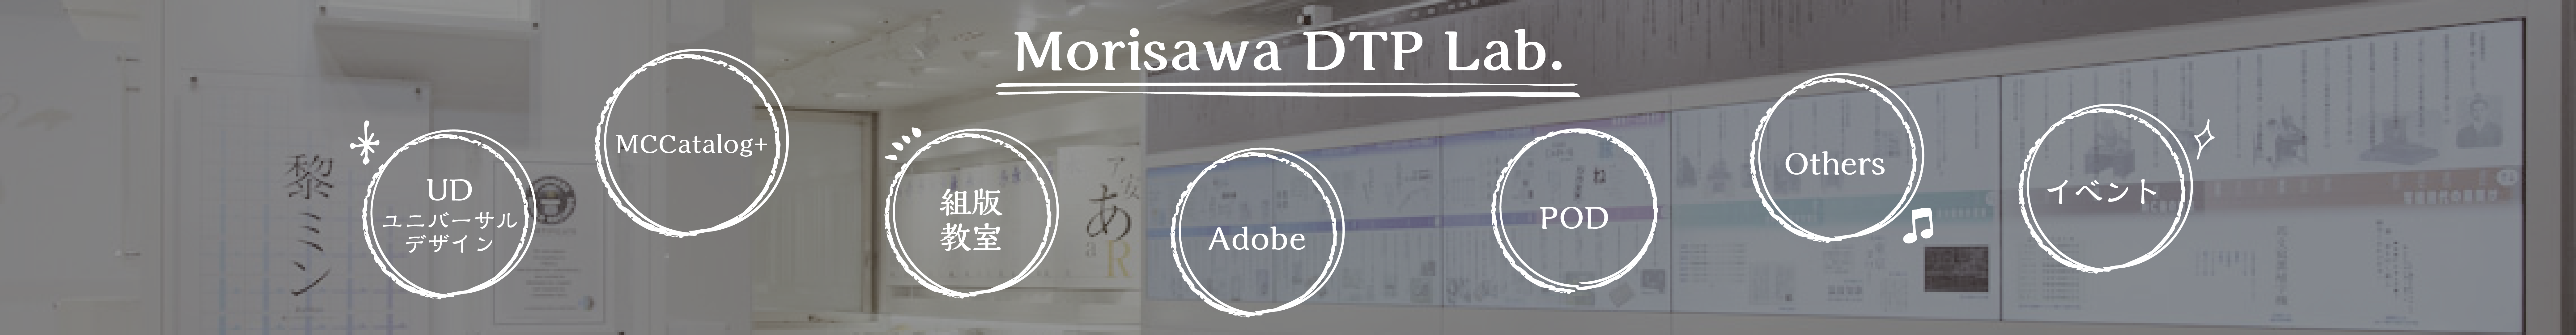 Morisawa DTP Lab